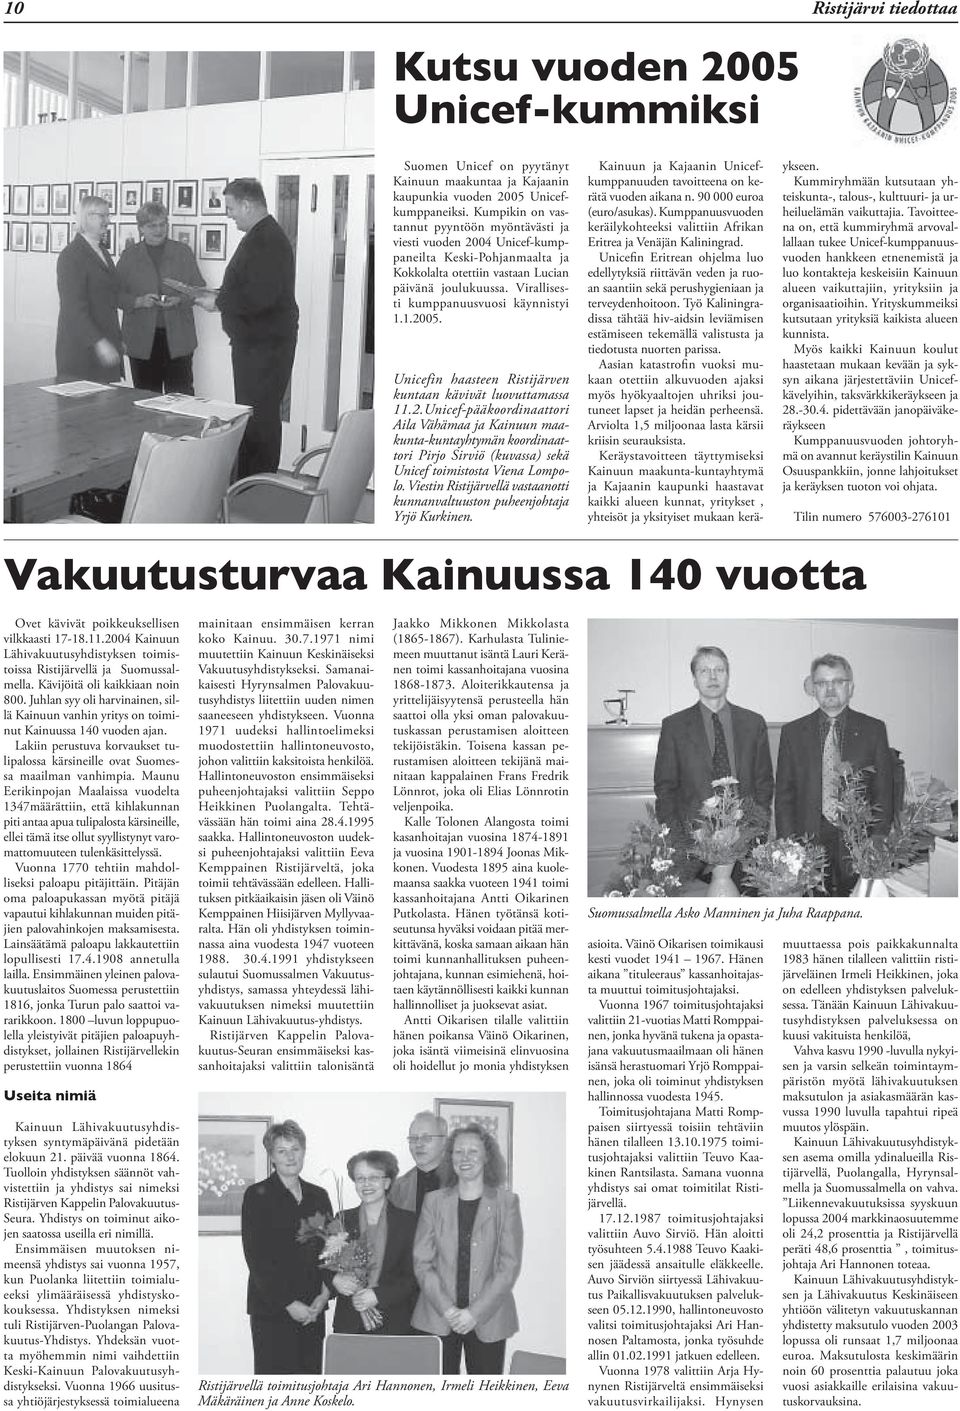 Virallisesti kumppanuusvuosi käynnistyi 1.1.2005. Unicefin haasteen Ristijärven kuntaan kävivät luovuttamassa 11.2.Unicef-pääkoordinaattori Aila Vähämaa ja Kainuun maakunta-kuntayhtymän koordinaattori Pirjo Sirviö (kuvassa) sekä Unicef toimistosta Viena Lompolo.